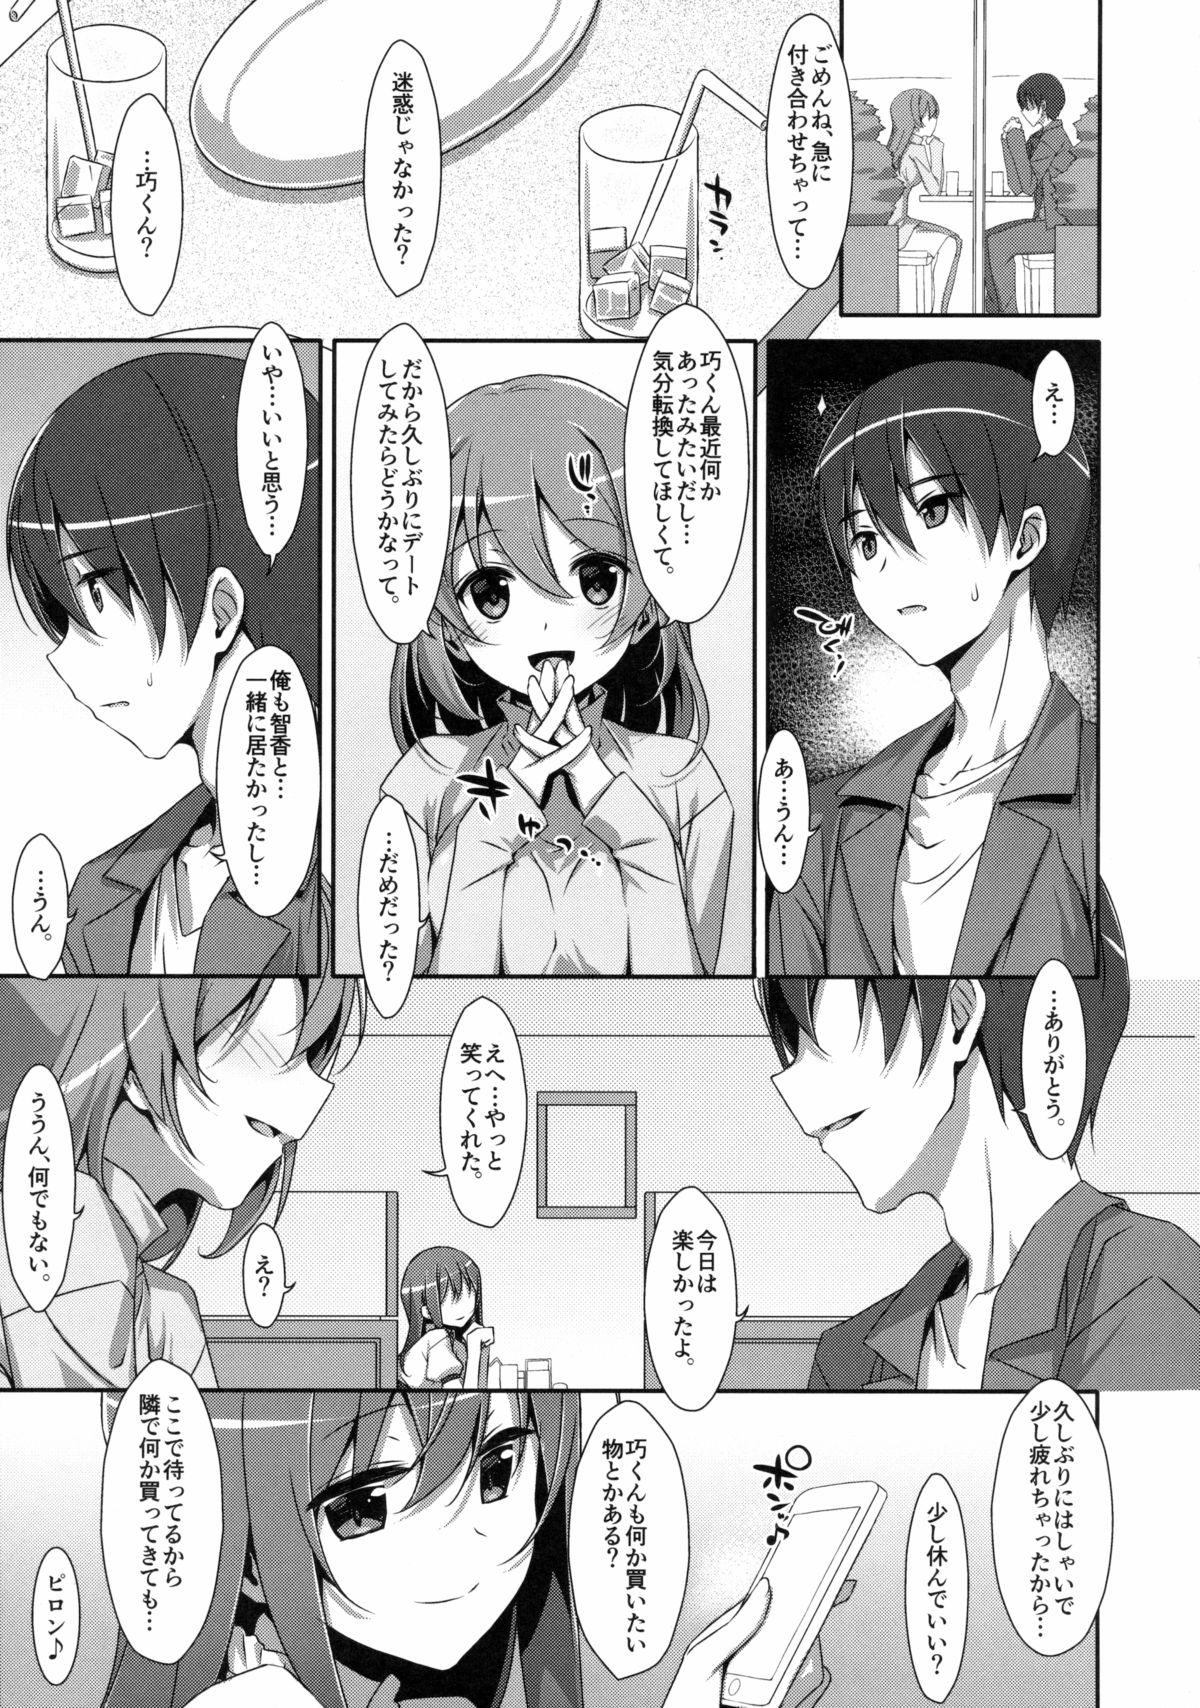 Hiddencam Watashi no, Onii-chan 2 Kitchen - Page 4